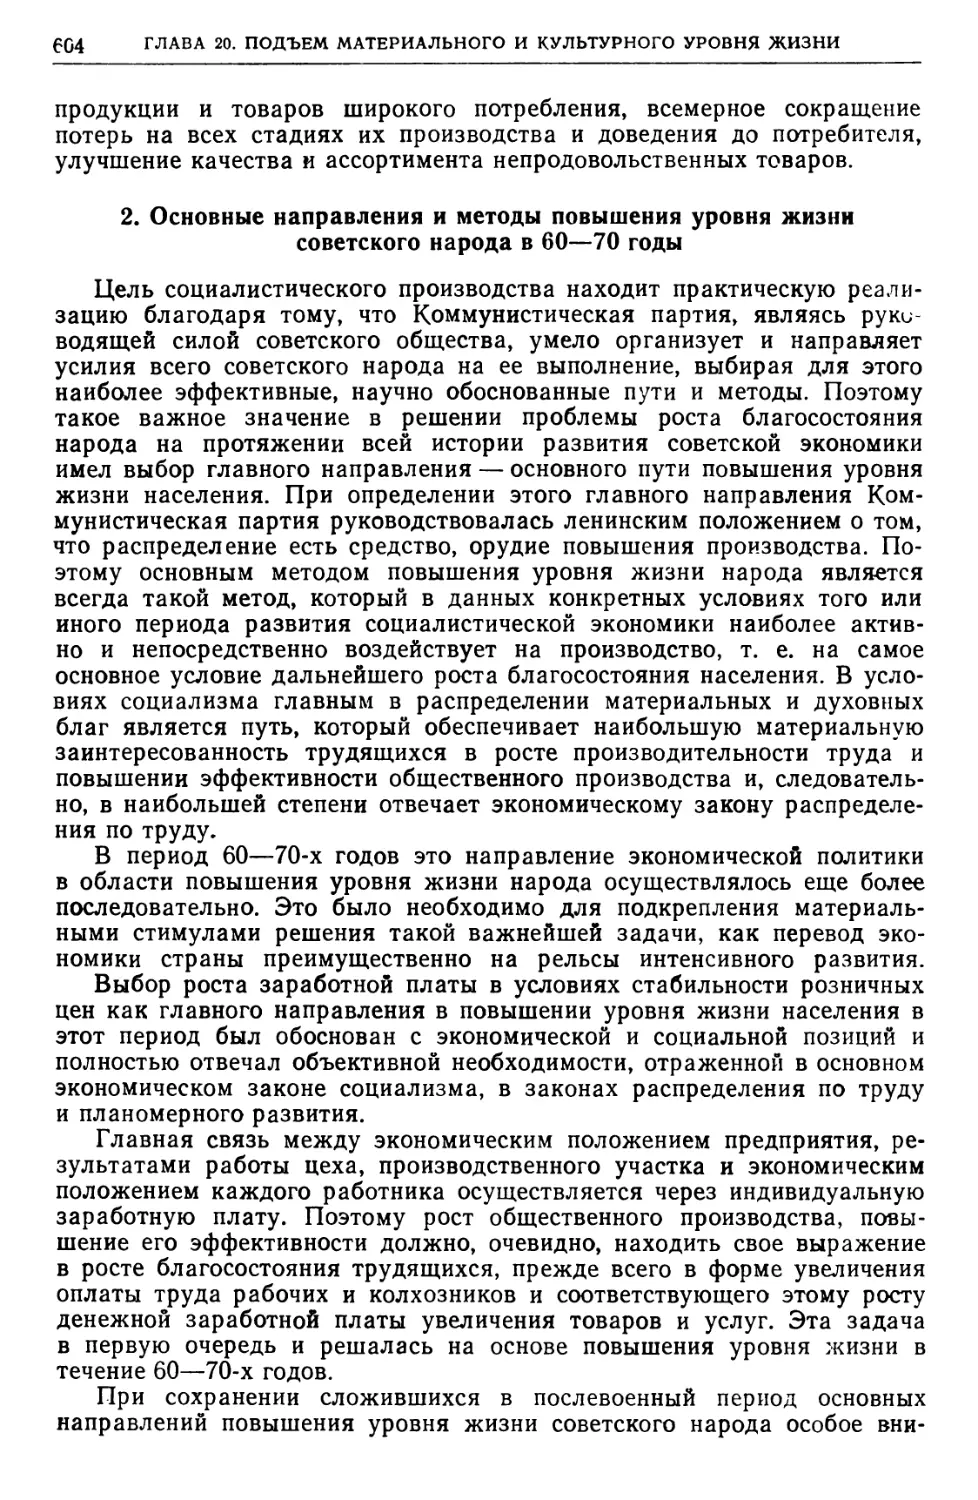 2. Основные направления и методы повышения уровня жизни советского народа в 60—70 годы